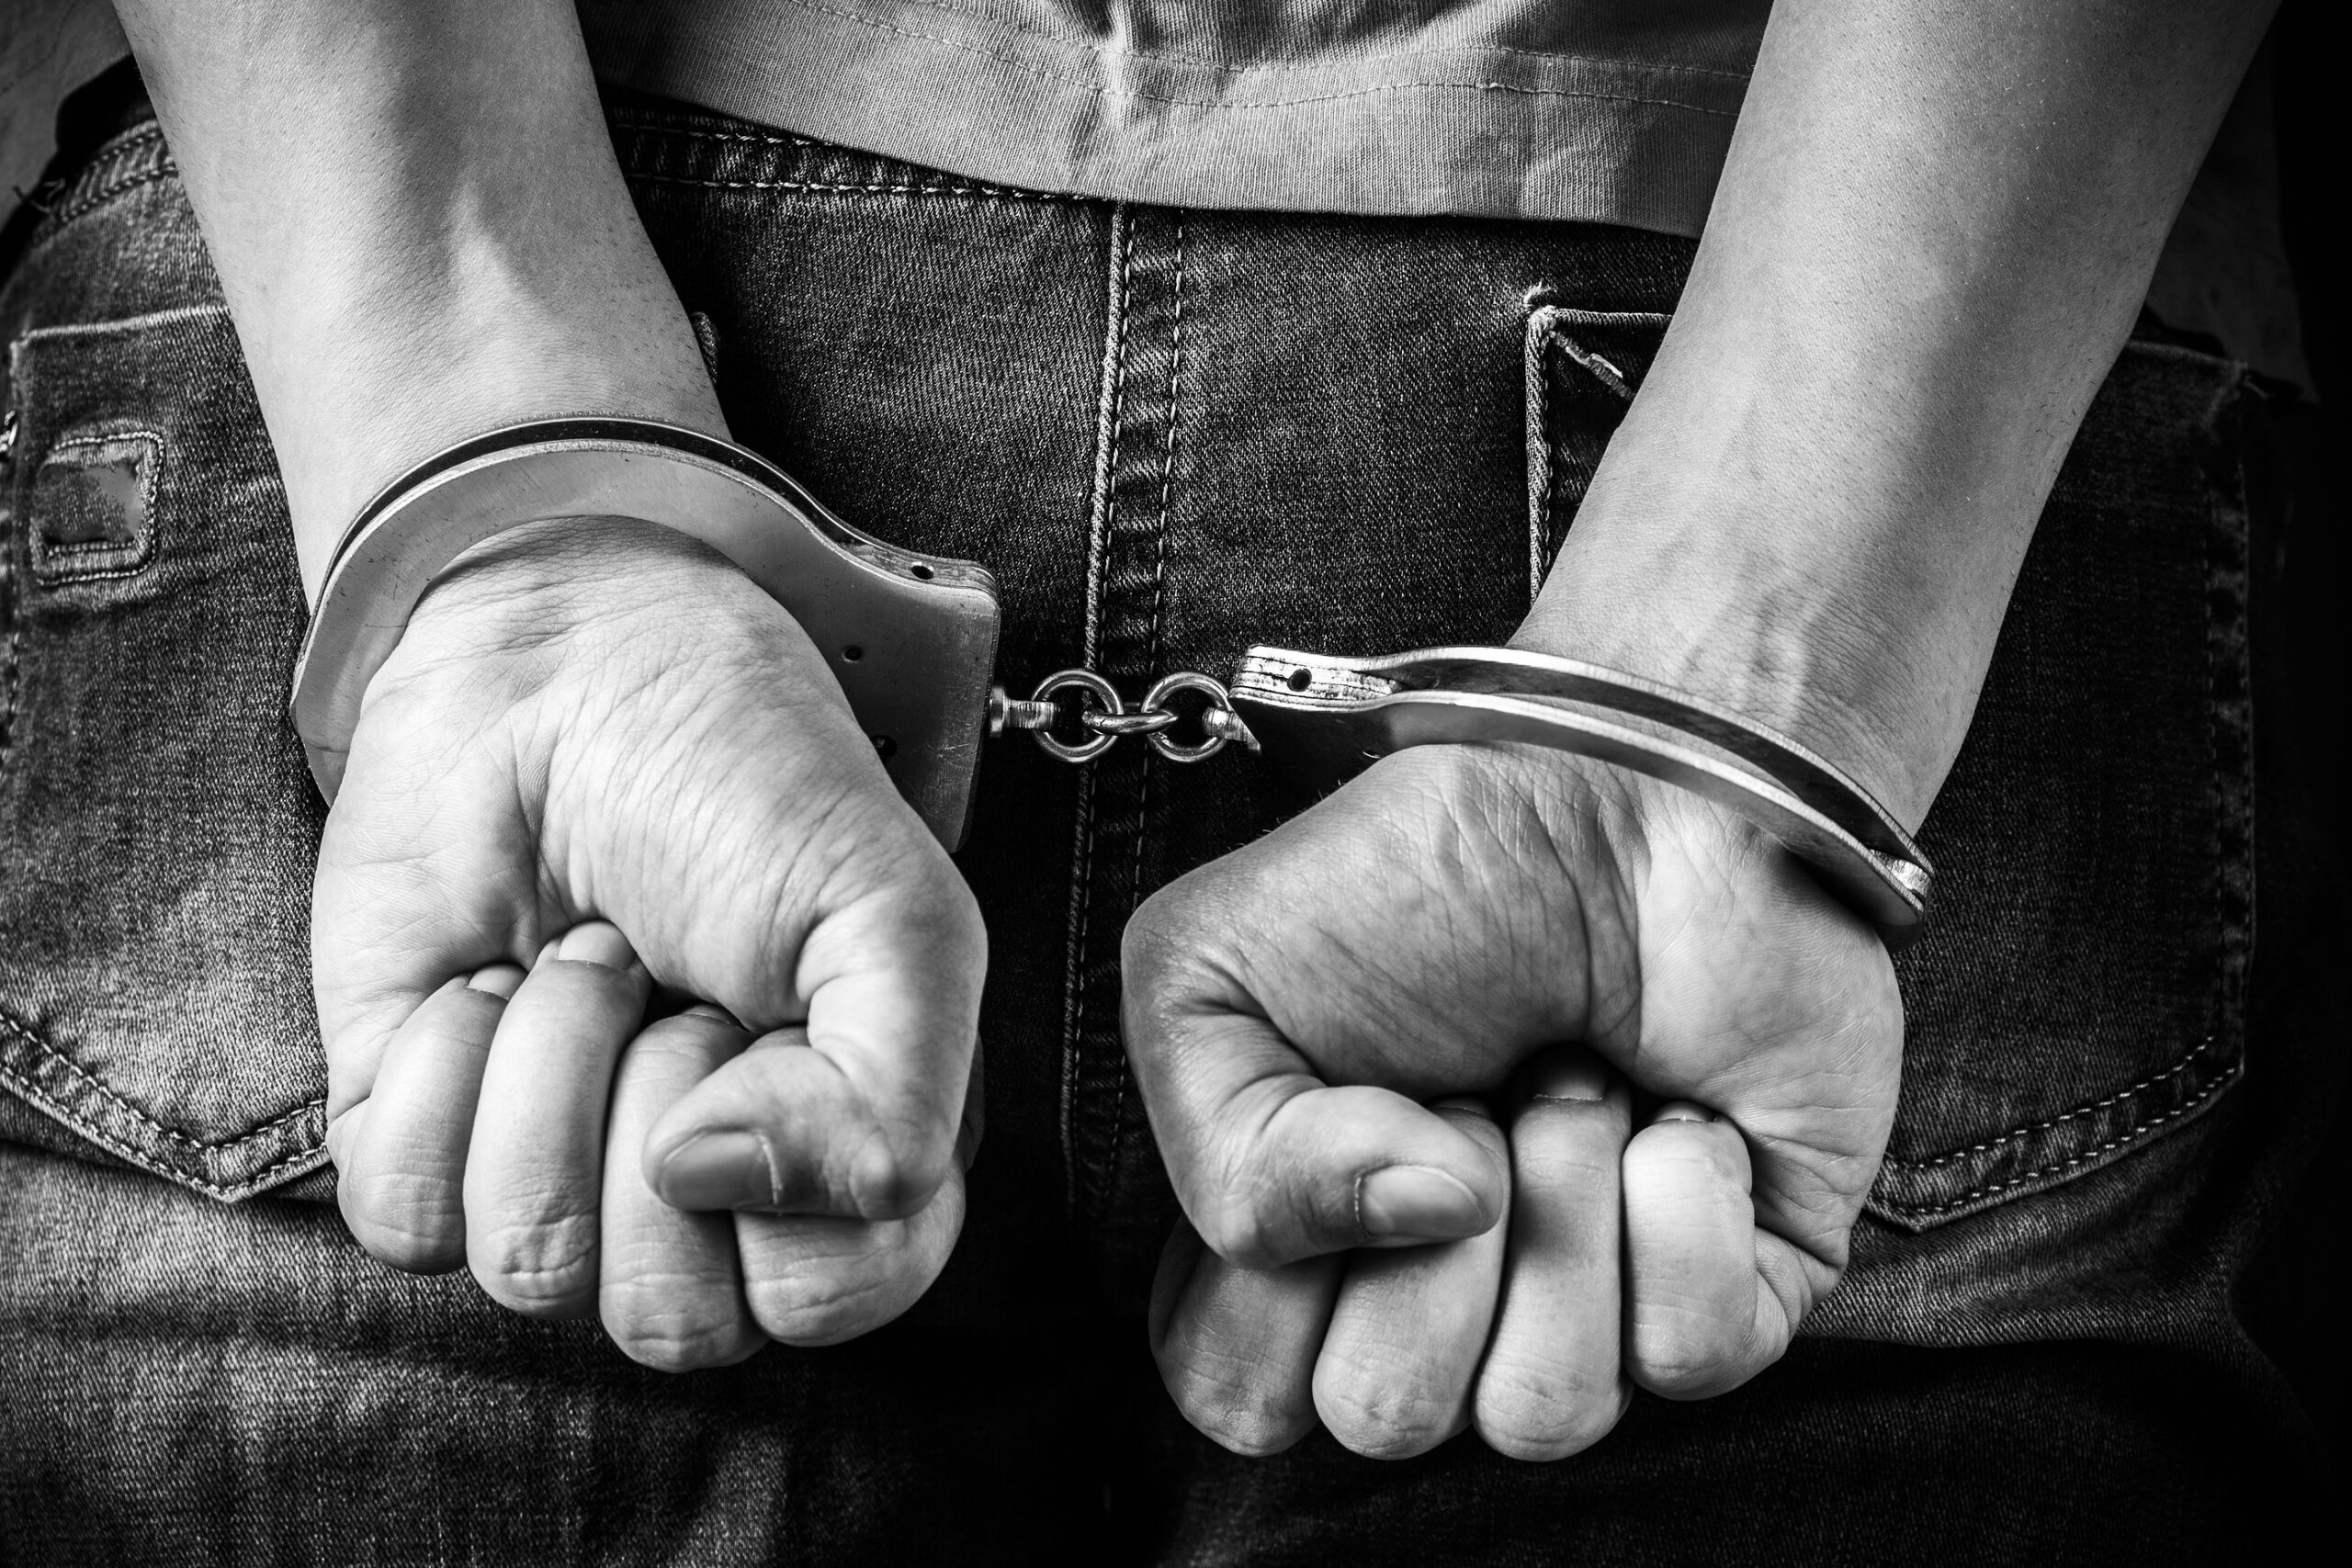 Man Hands In Handcuffs